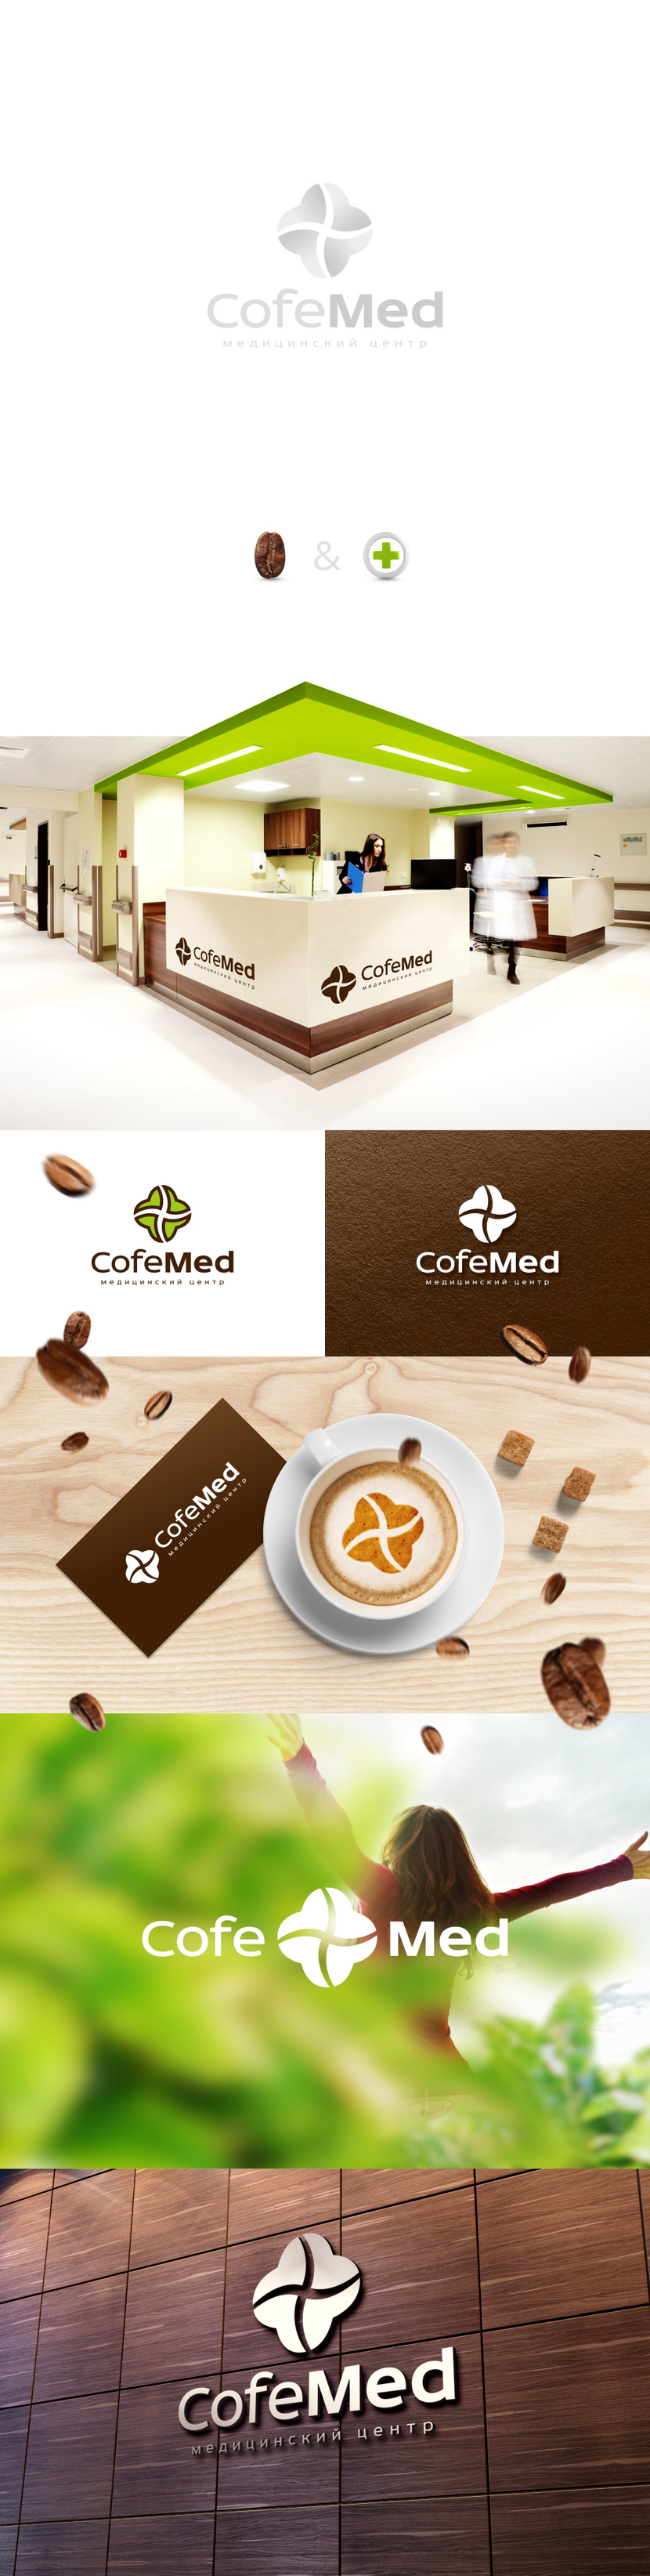 Требуется разработать фирменный стиль и логотип Медицинского центра "КофеМед".  -  автор G G